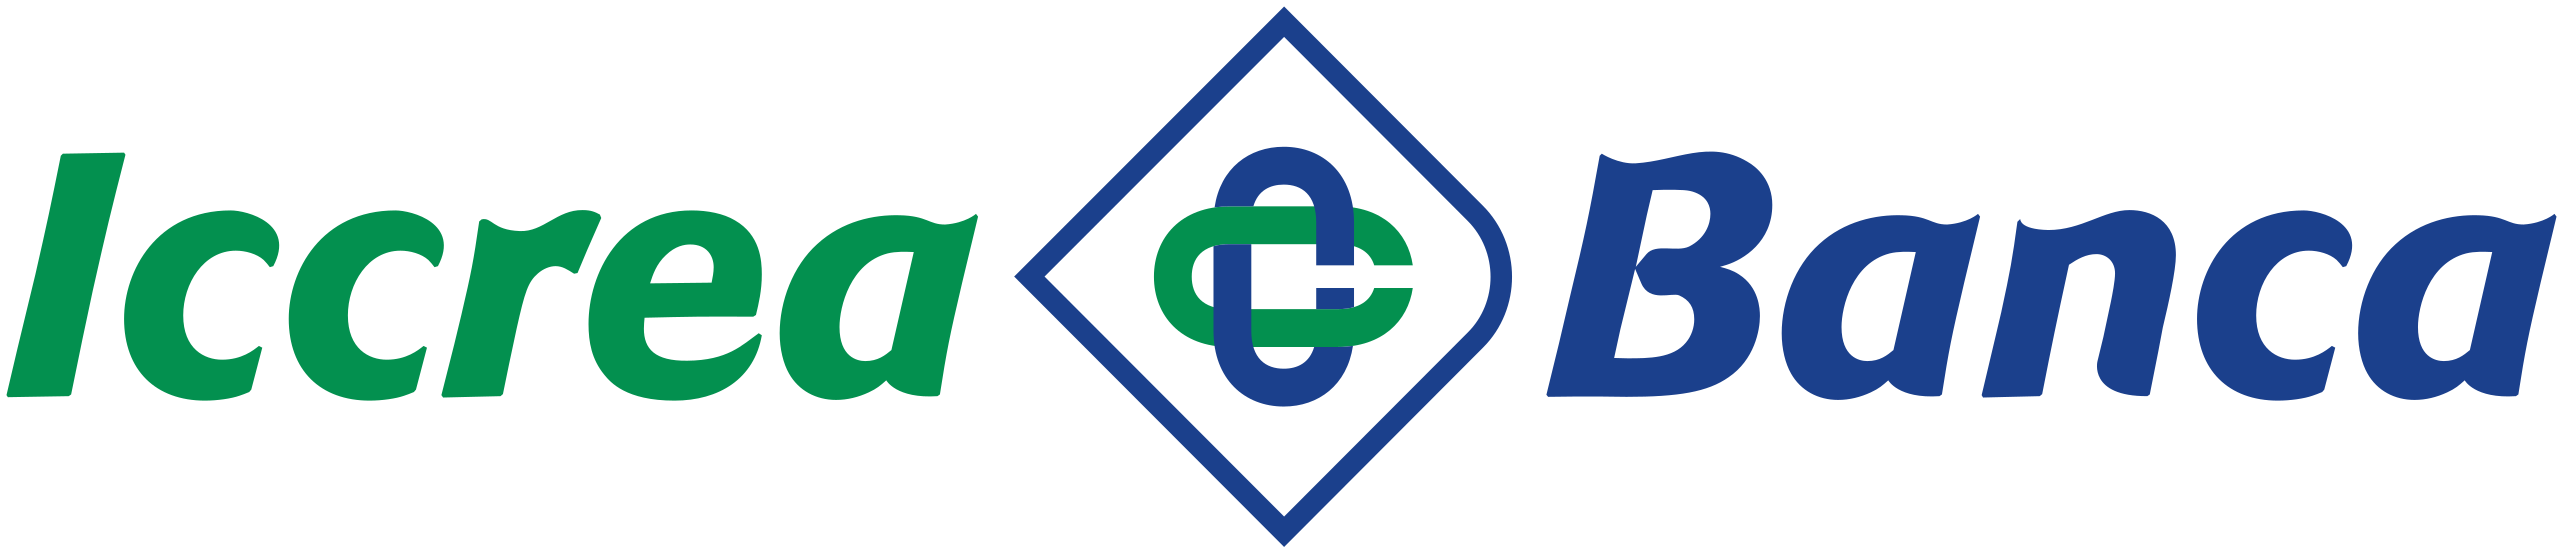 2560px-Logo_Iccrea_Banca.svg